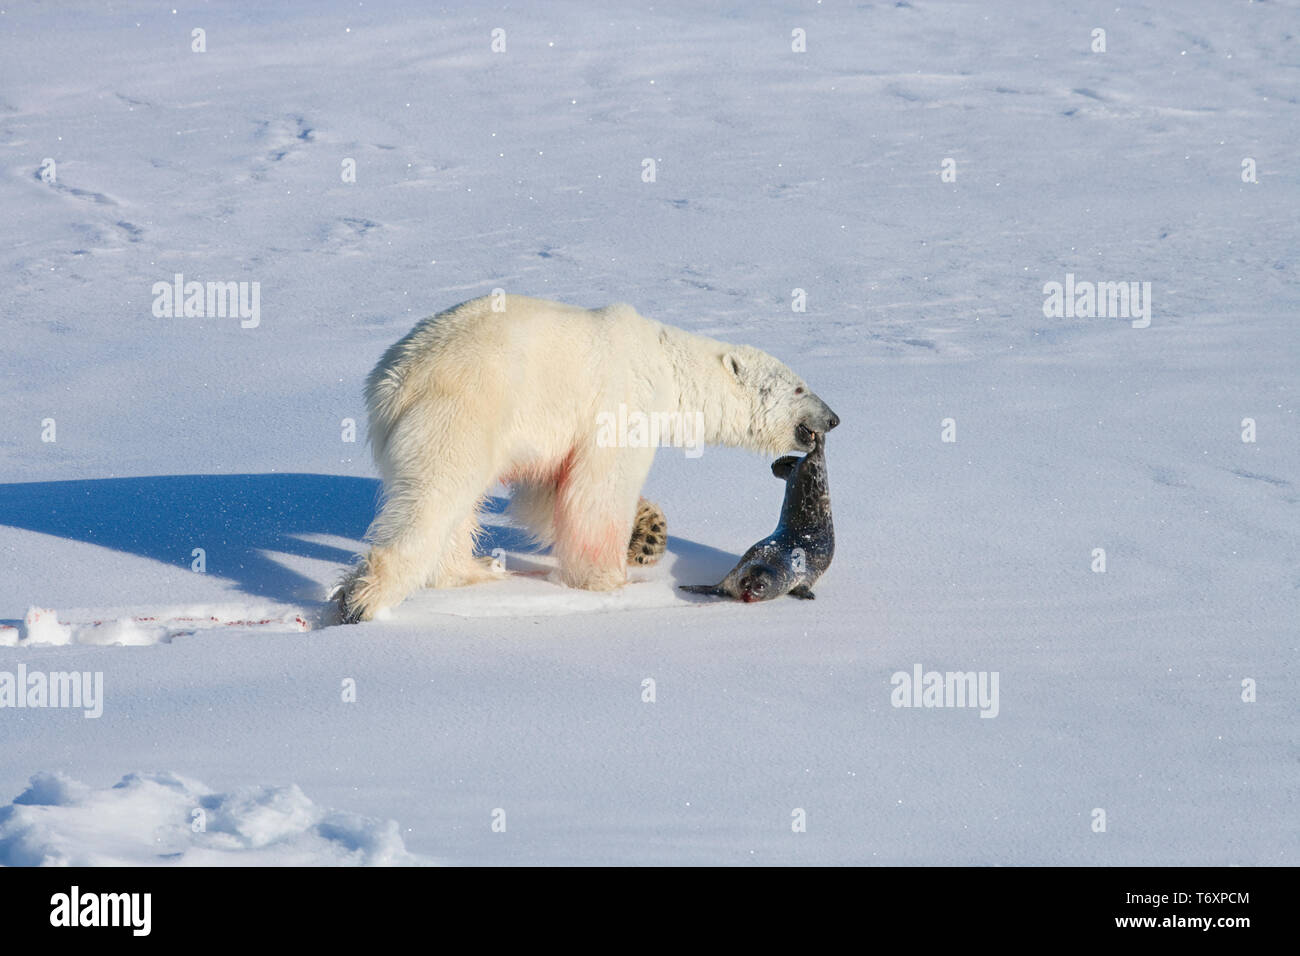 L'ours polaire (Ursus maritimus) sur la glace de mer avec les phoques annelés de l'Arctique russe à tuer, photographiés au cours de voyage à pôle Nord. Banque D'Images